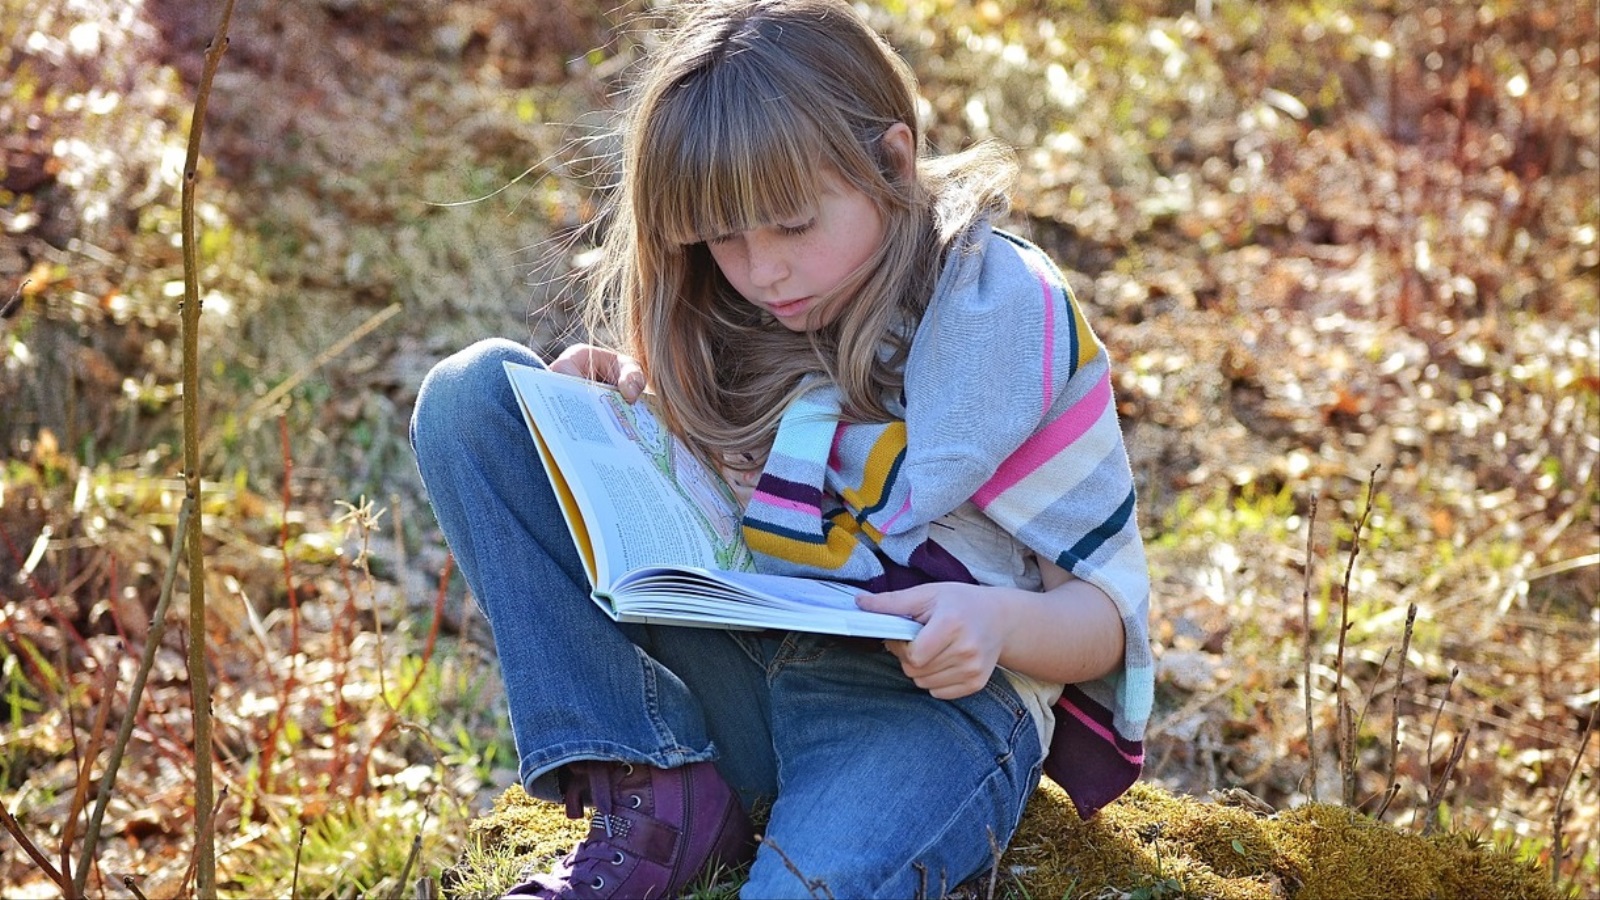 يفضل الطفل قبل المراهقة الكتب غير القصصية (بيكسباي)